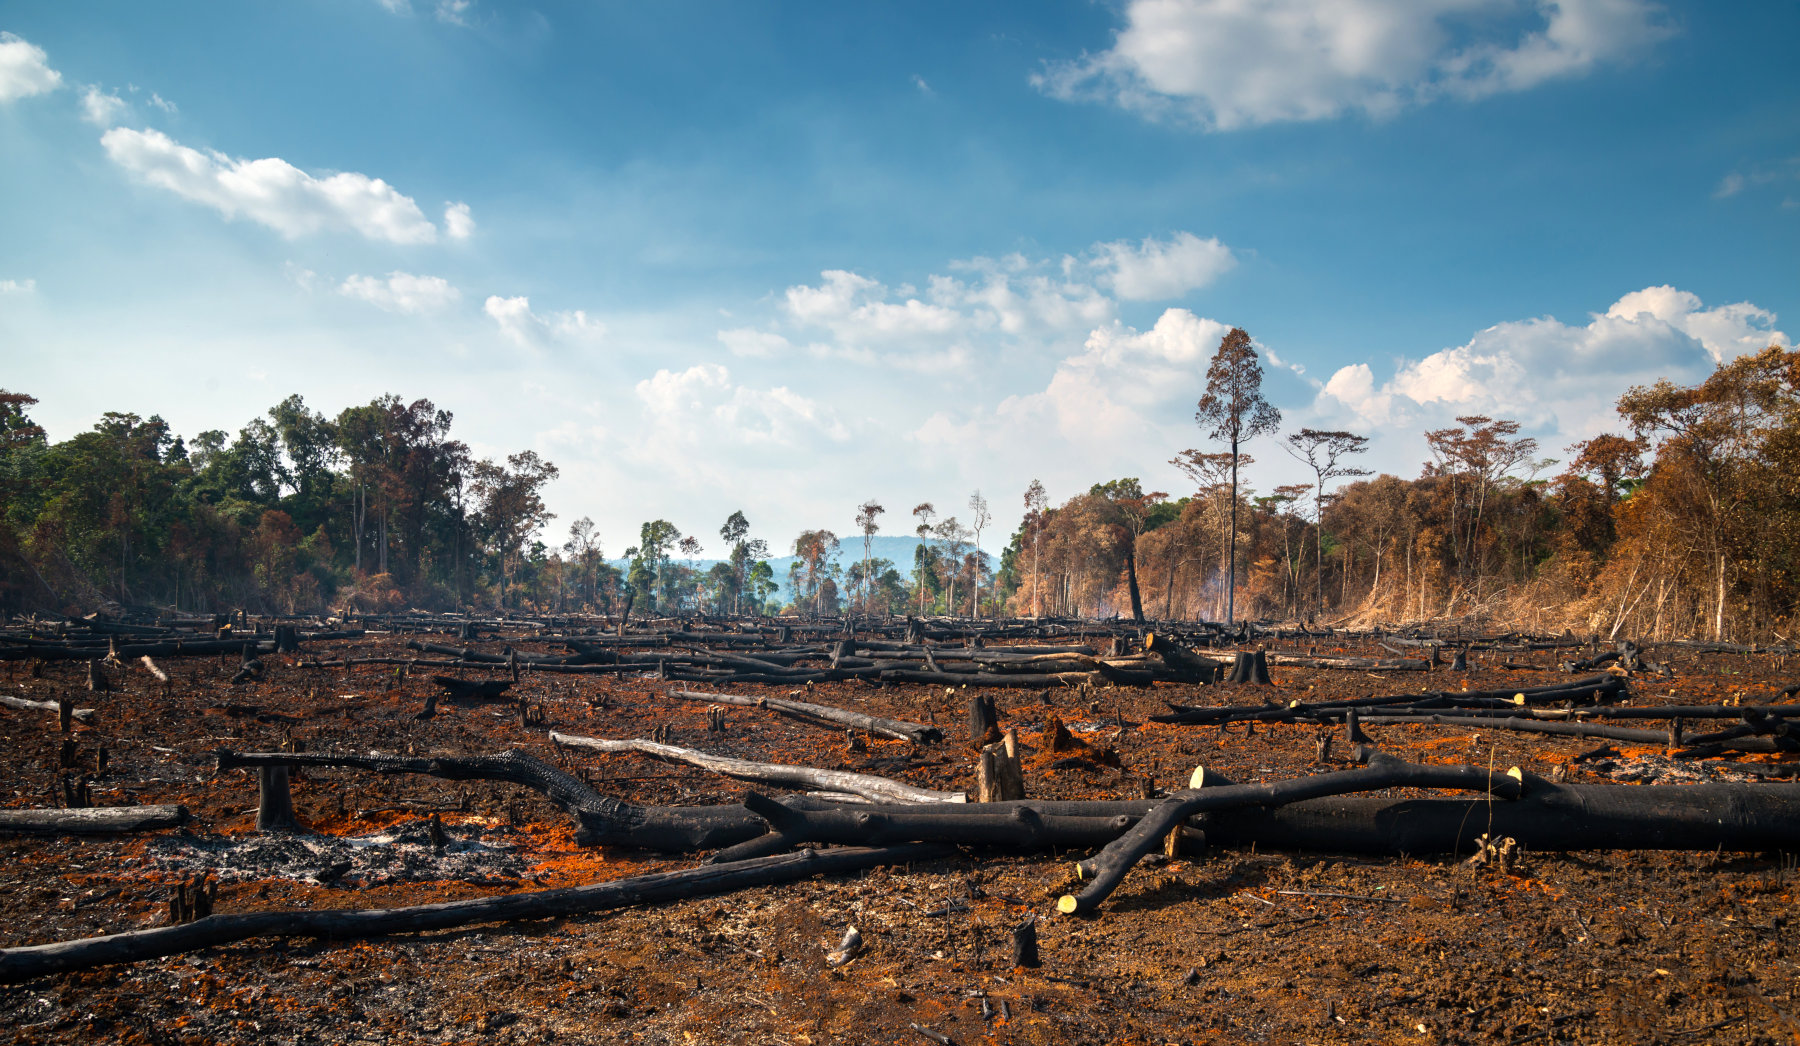 Αμαζόνιος: Το 2021 ήταν ένα καταστροφικό έτος – Αναπόφευκτη η υπερθέρμανση κατά 2 βαθμούς Κελσίου αν συνεχίσει έτσι